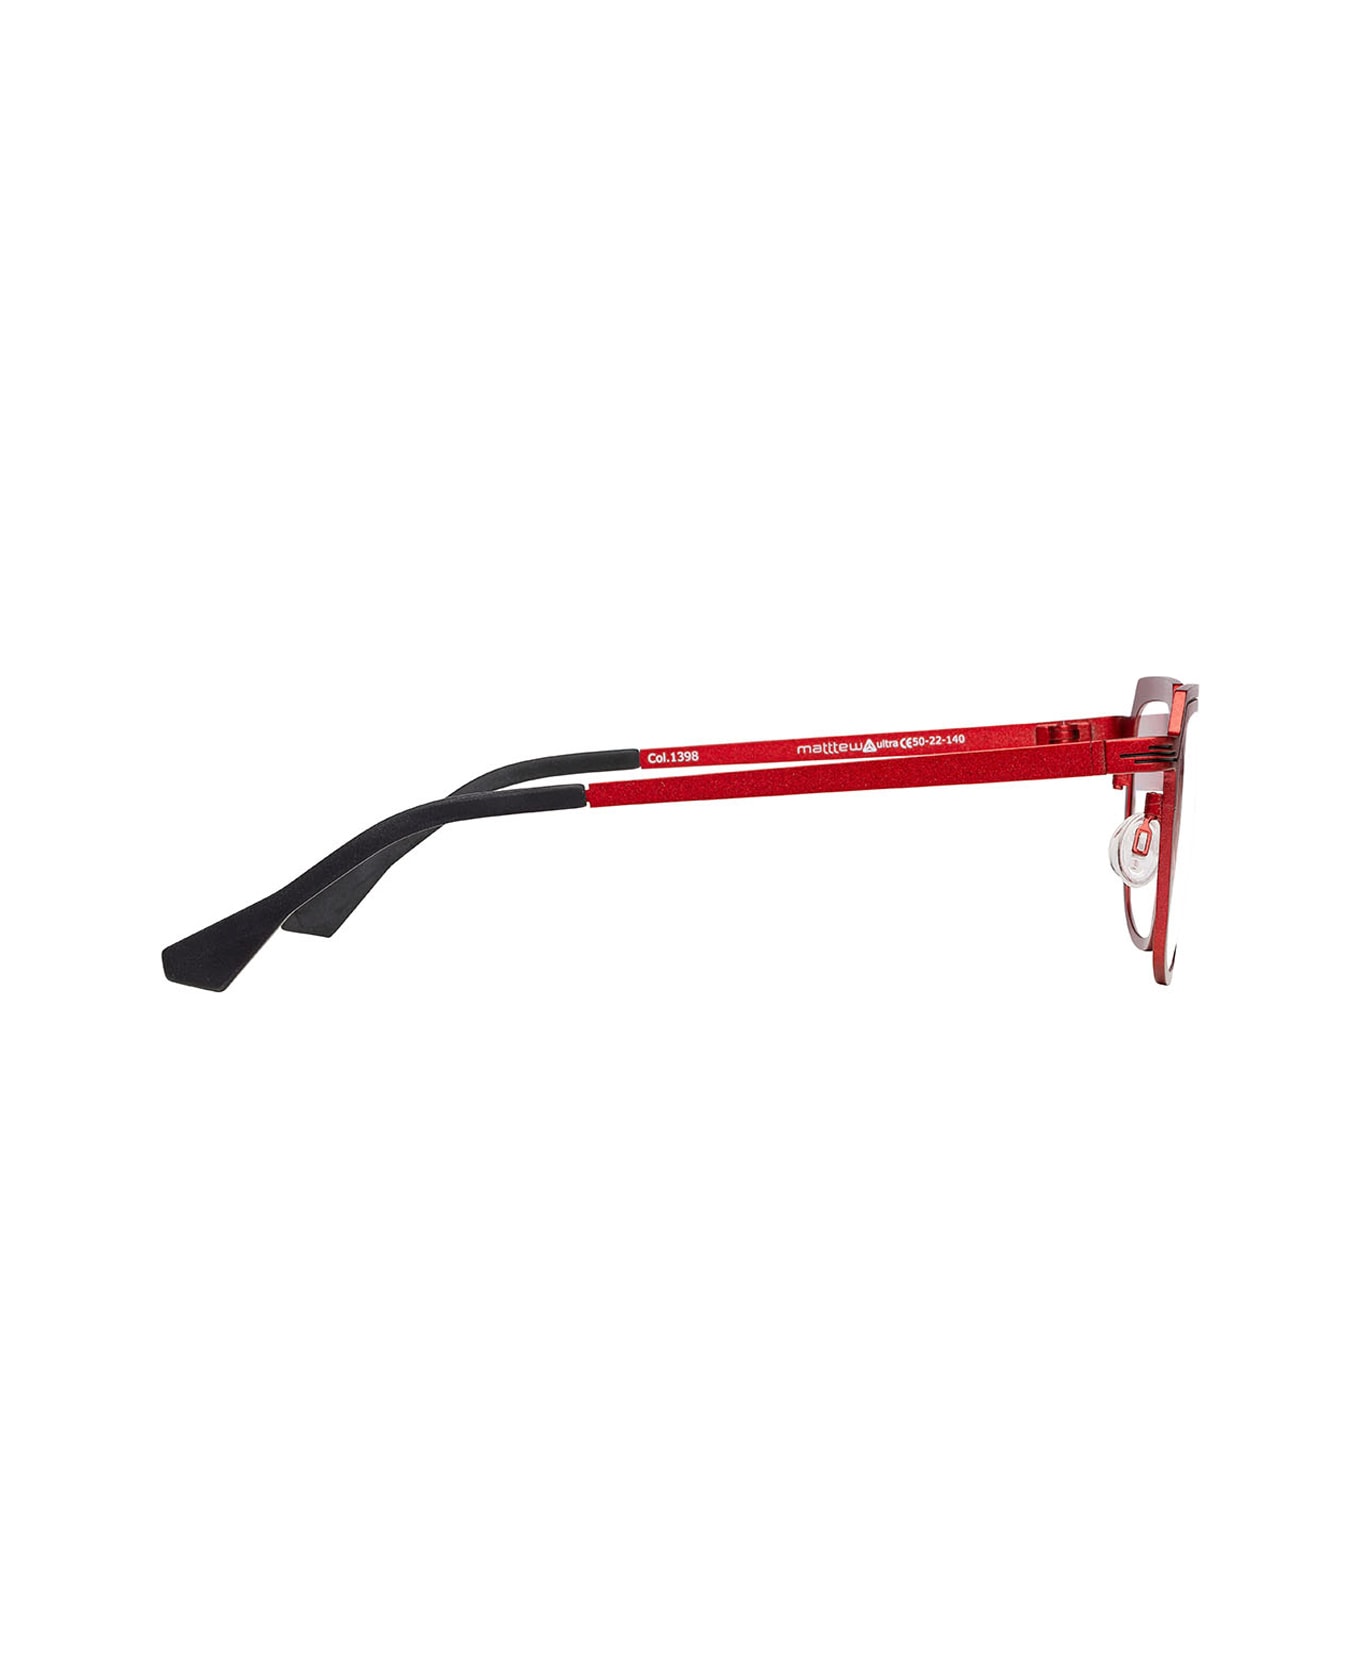 Matttew Ultra Glasses - Rosso アイウェア